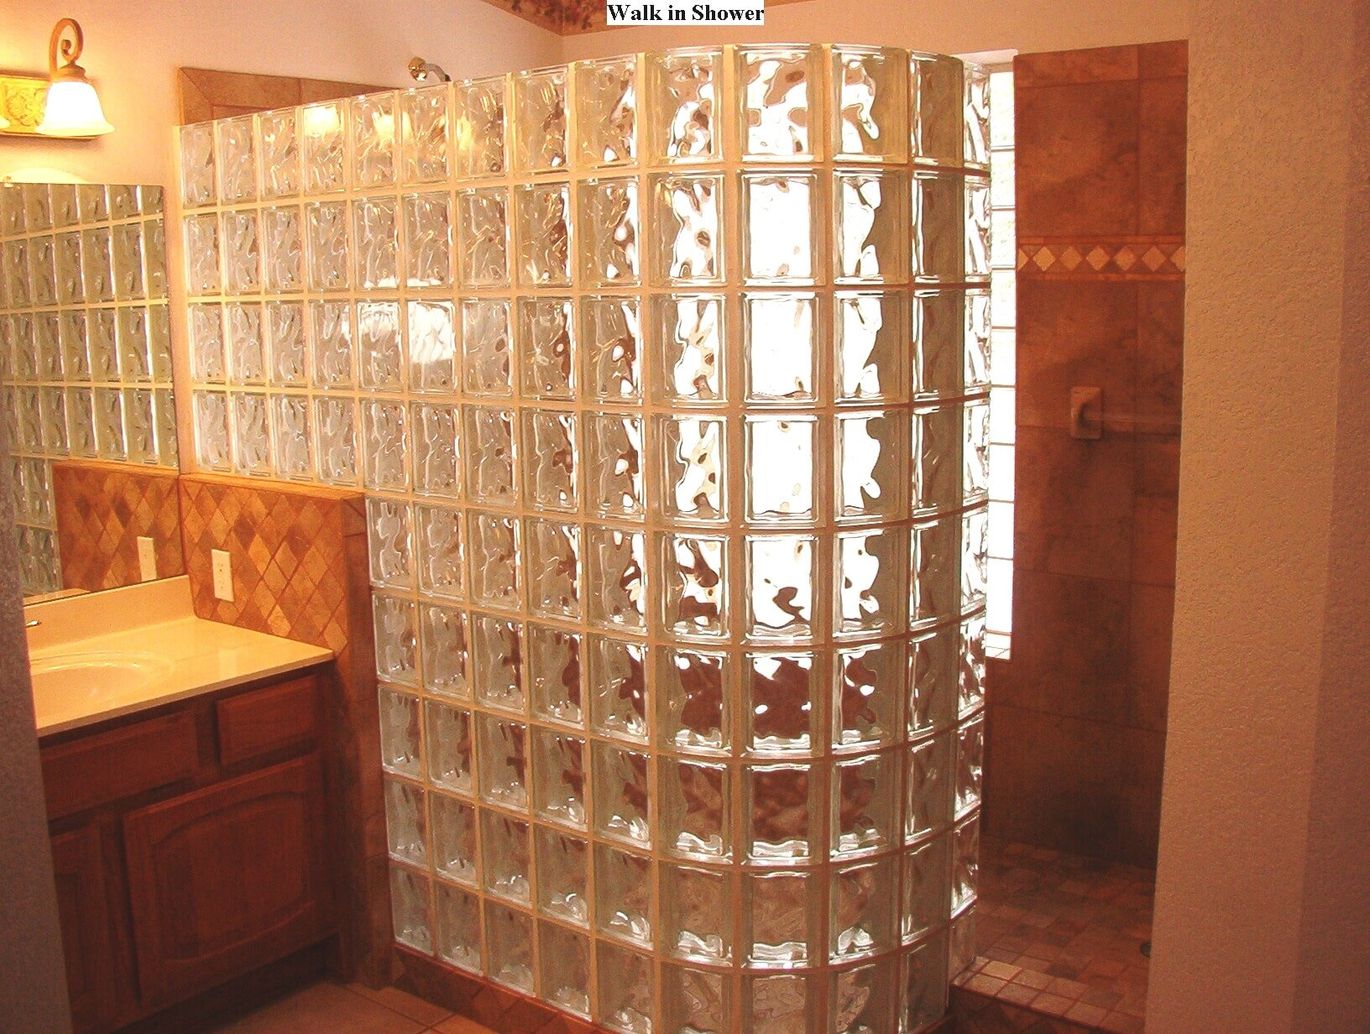 Tile & glass block Snail shower remodel 2 Surprise AZ 2